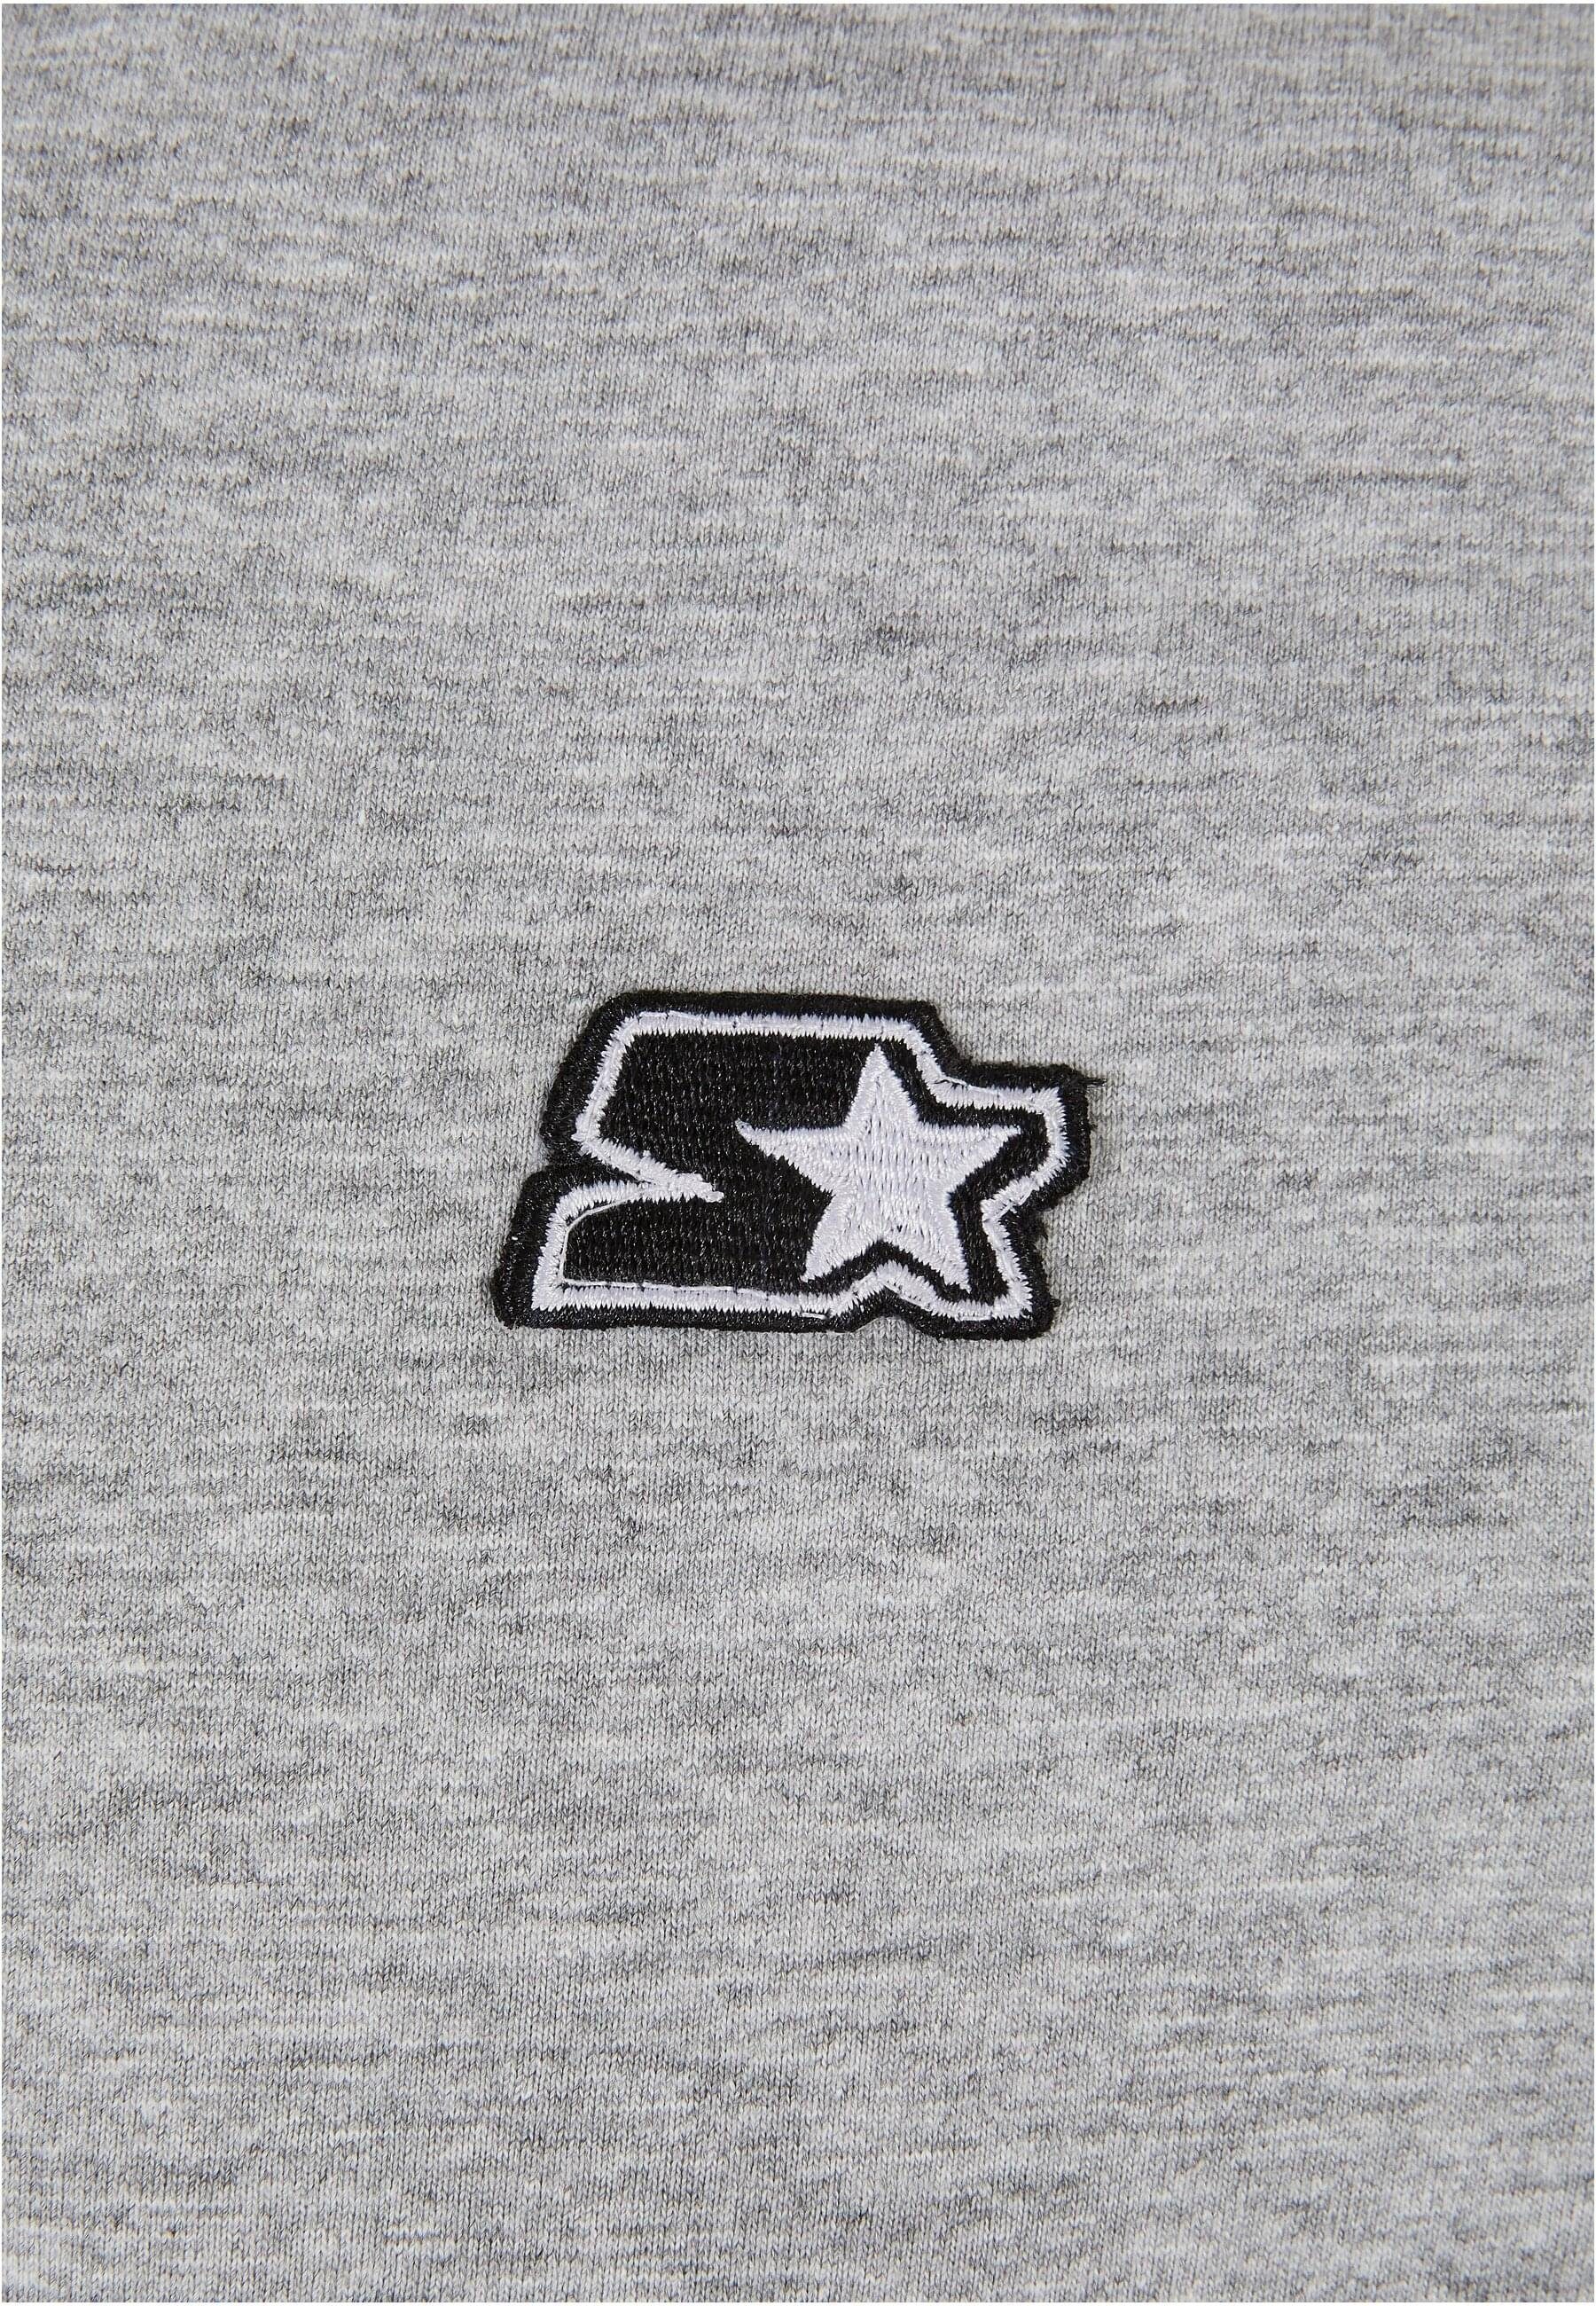 Starter T-Shirt heathergrey Starter Essential Jersey Herren (1-tlg)